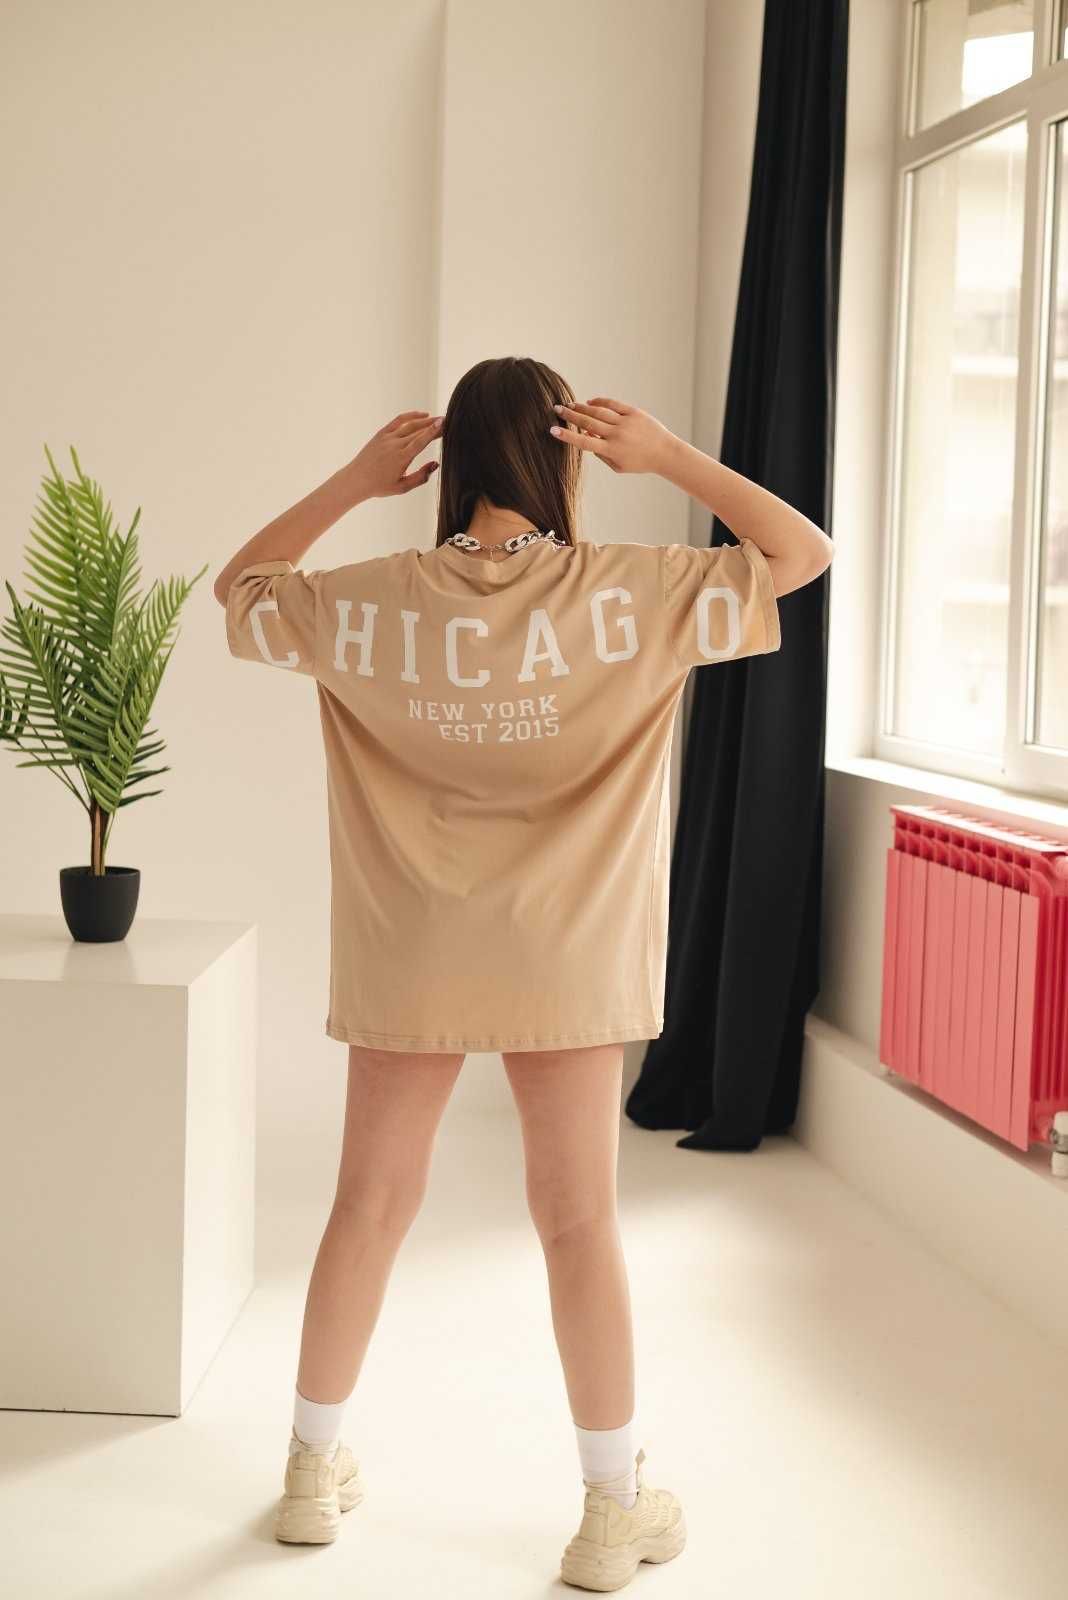 Топ продаж! Стильная Женская футболка oversize Chicago размер 42-48